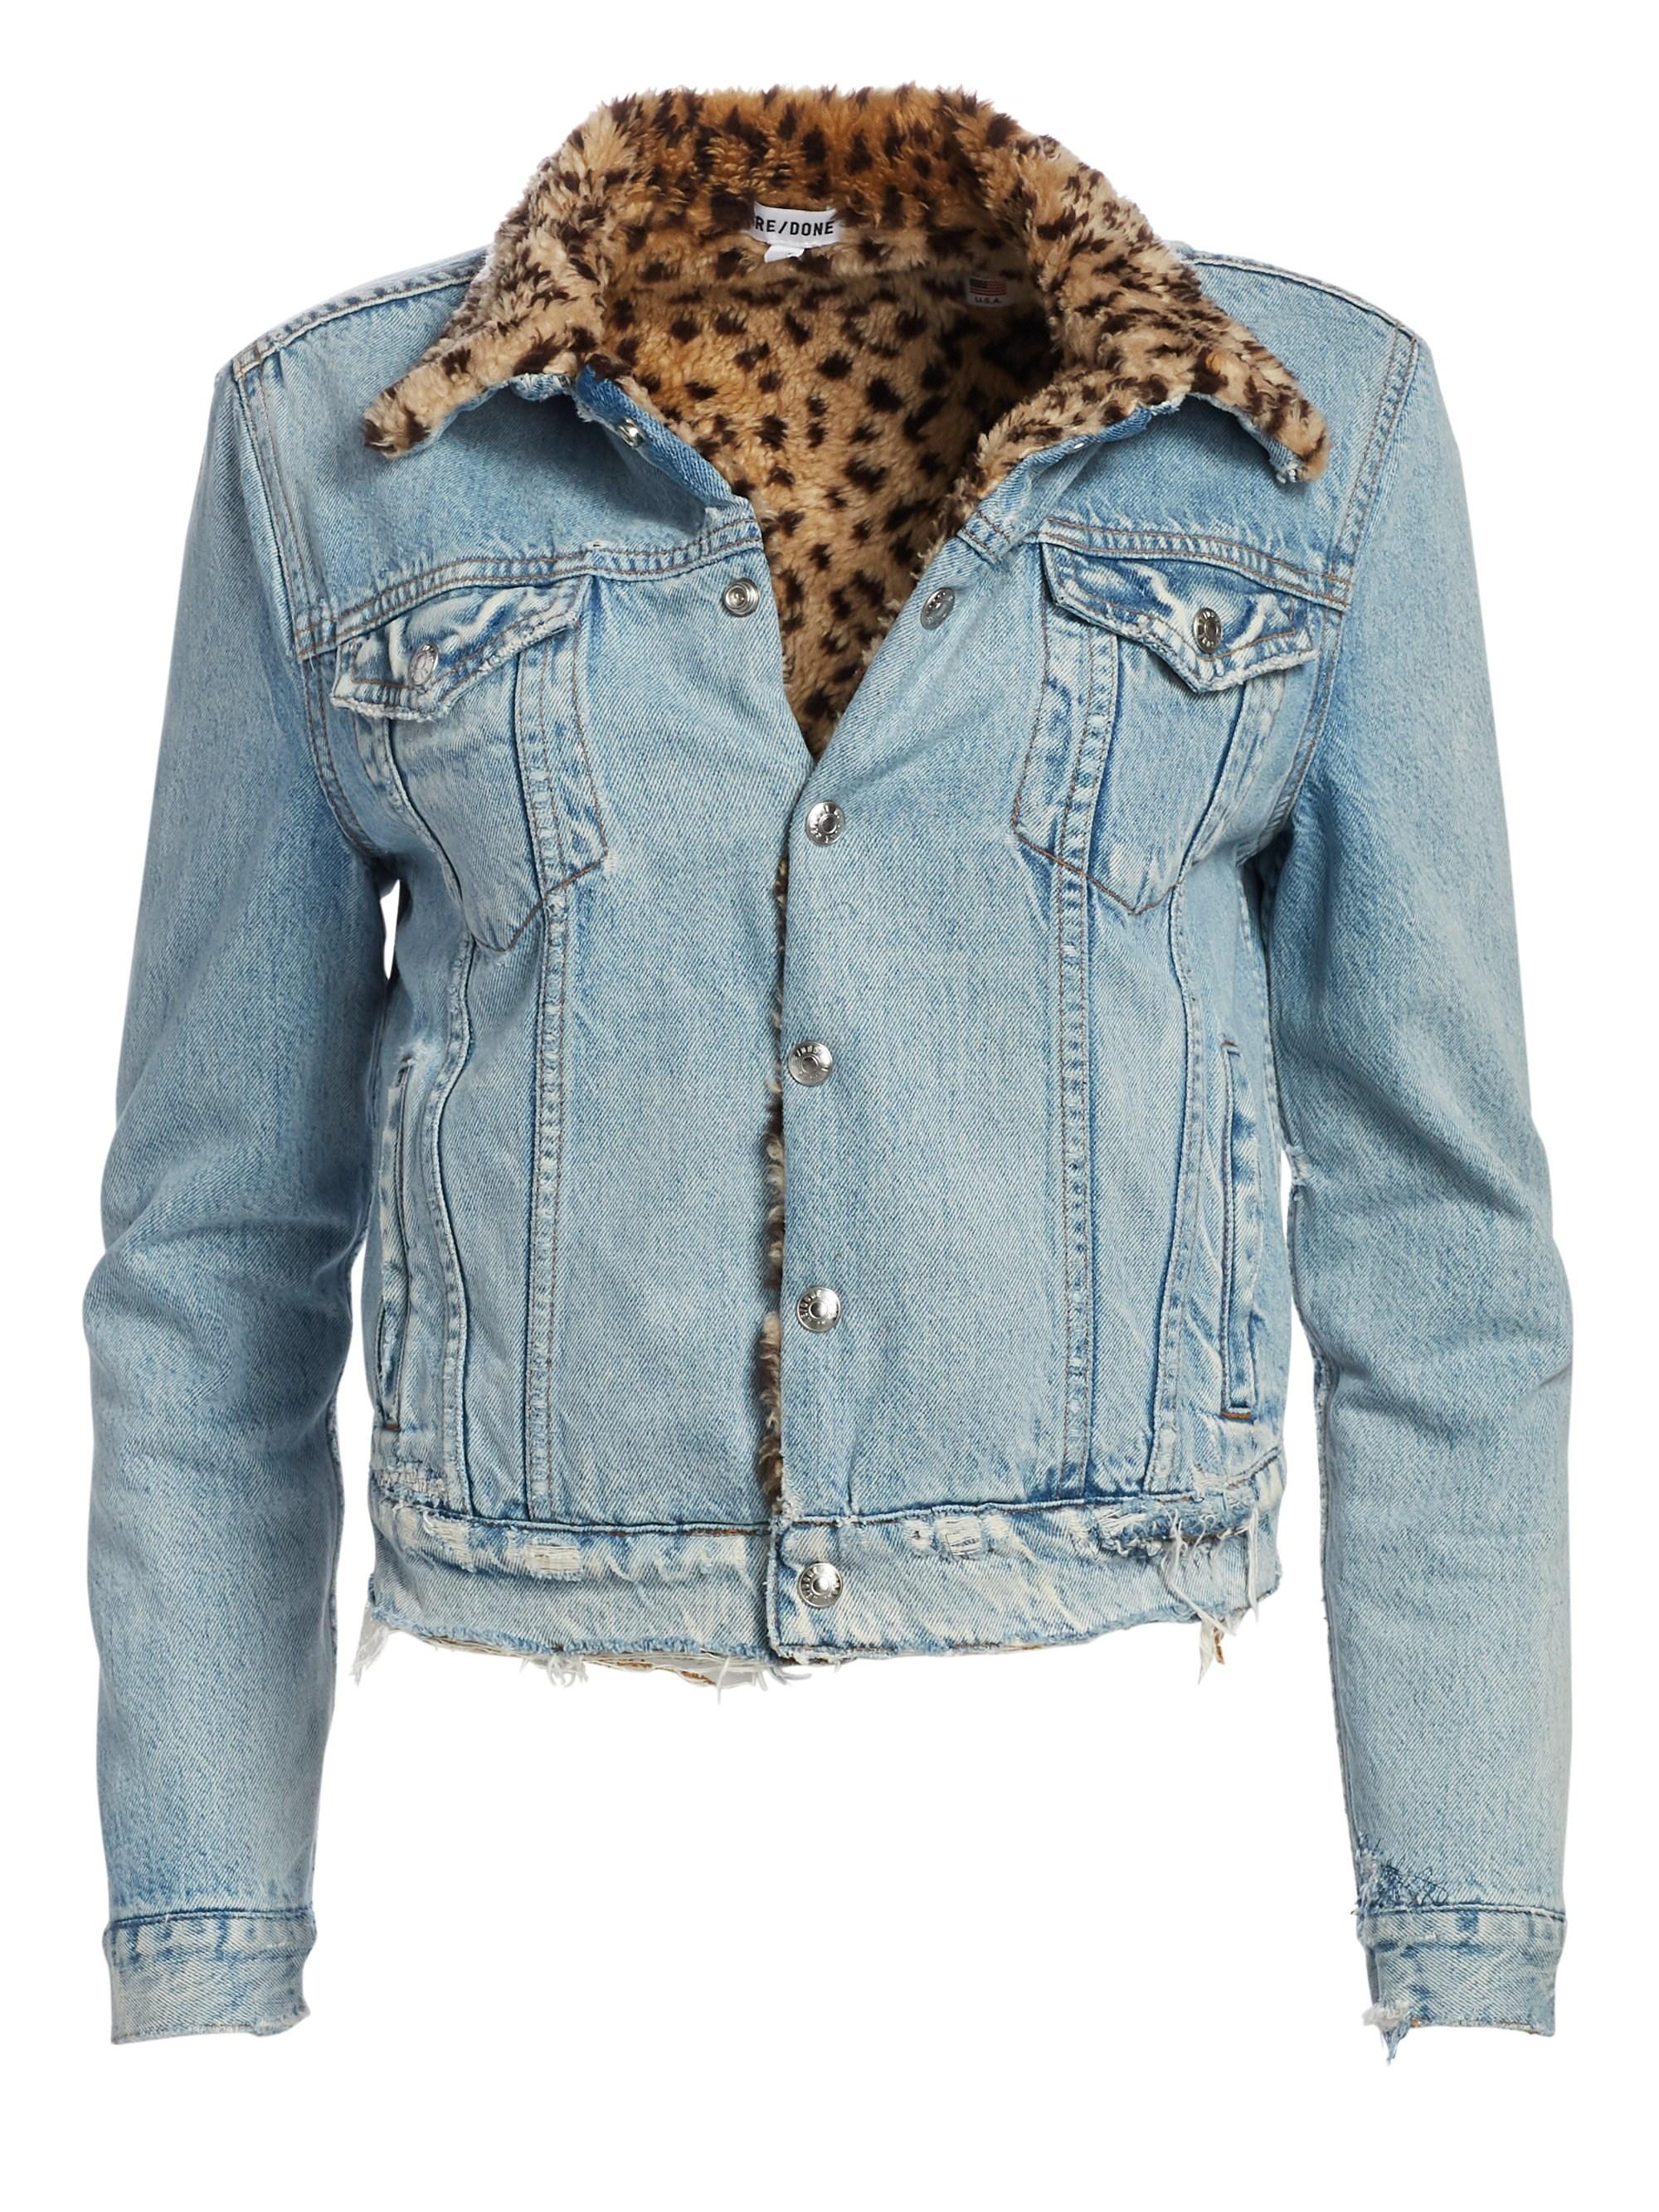 RE/DONE Leopard Faux Fur Collar Jean Jacket in Blue | Lyst